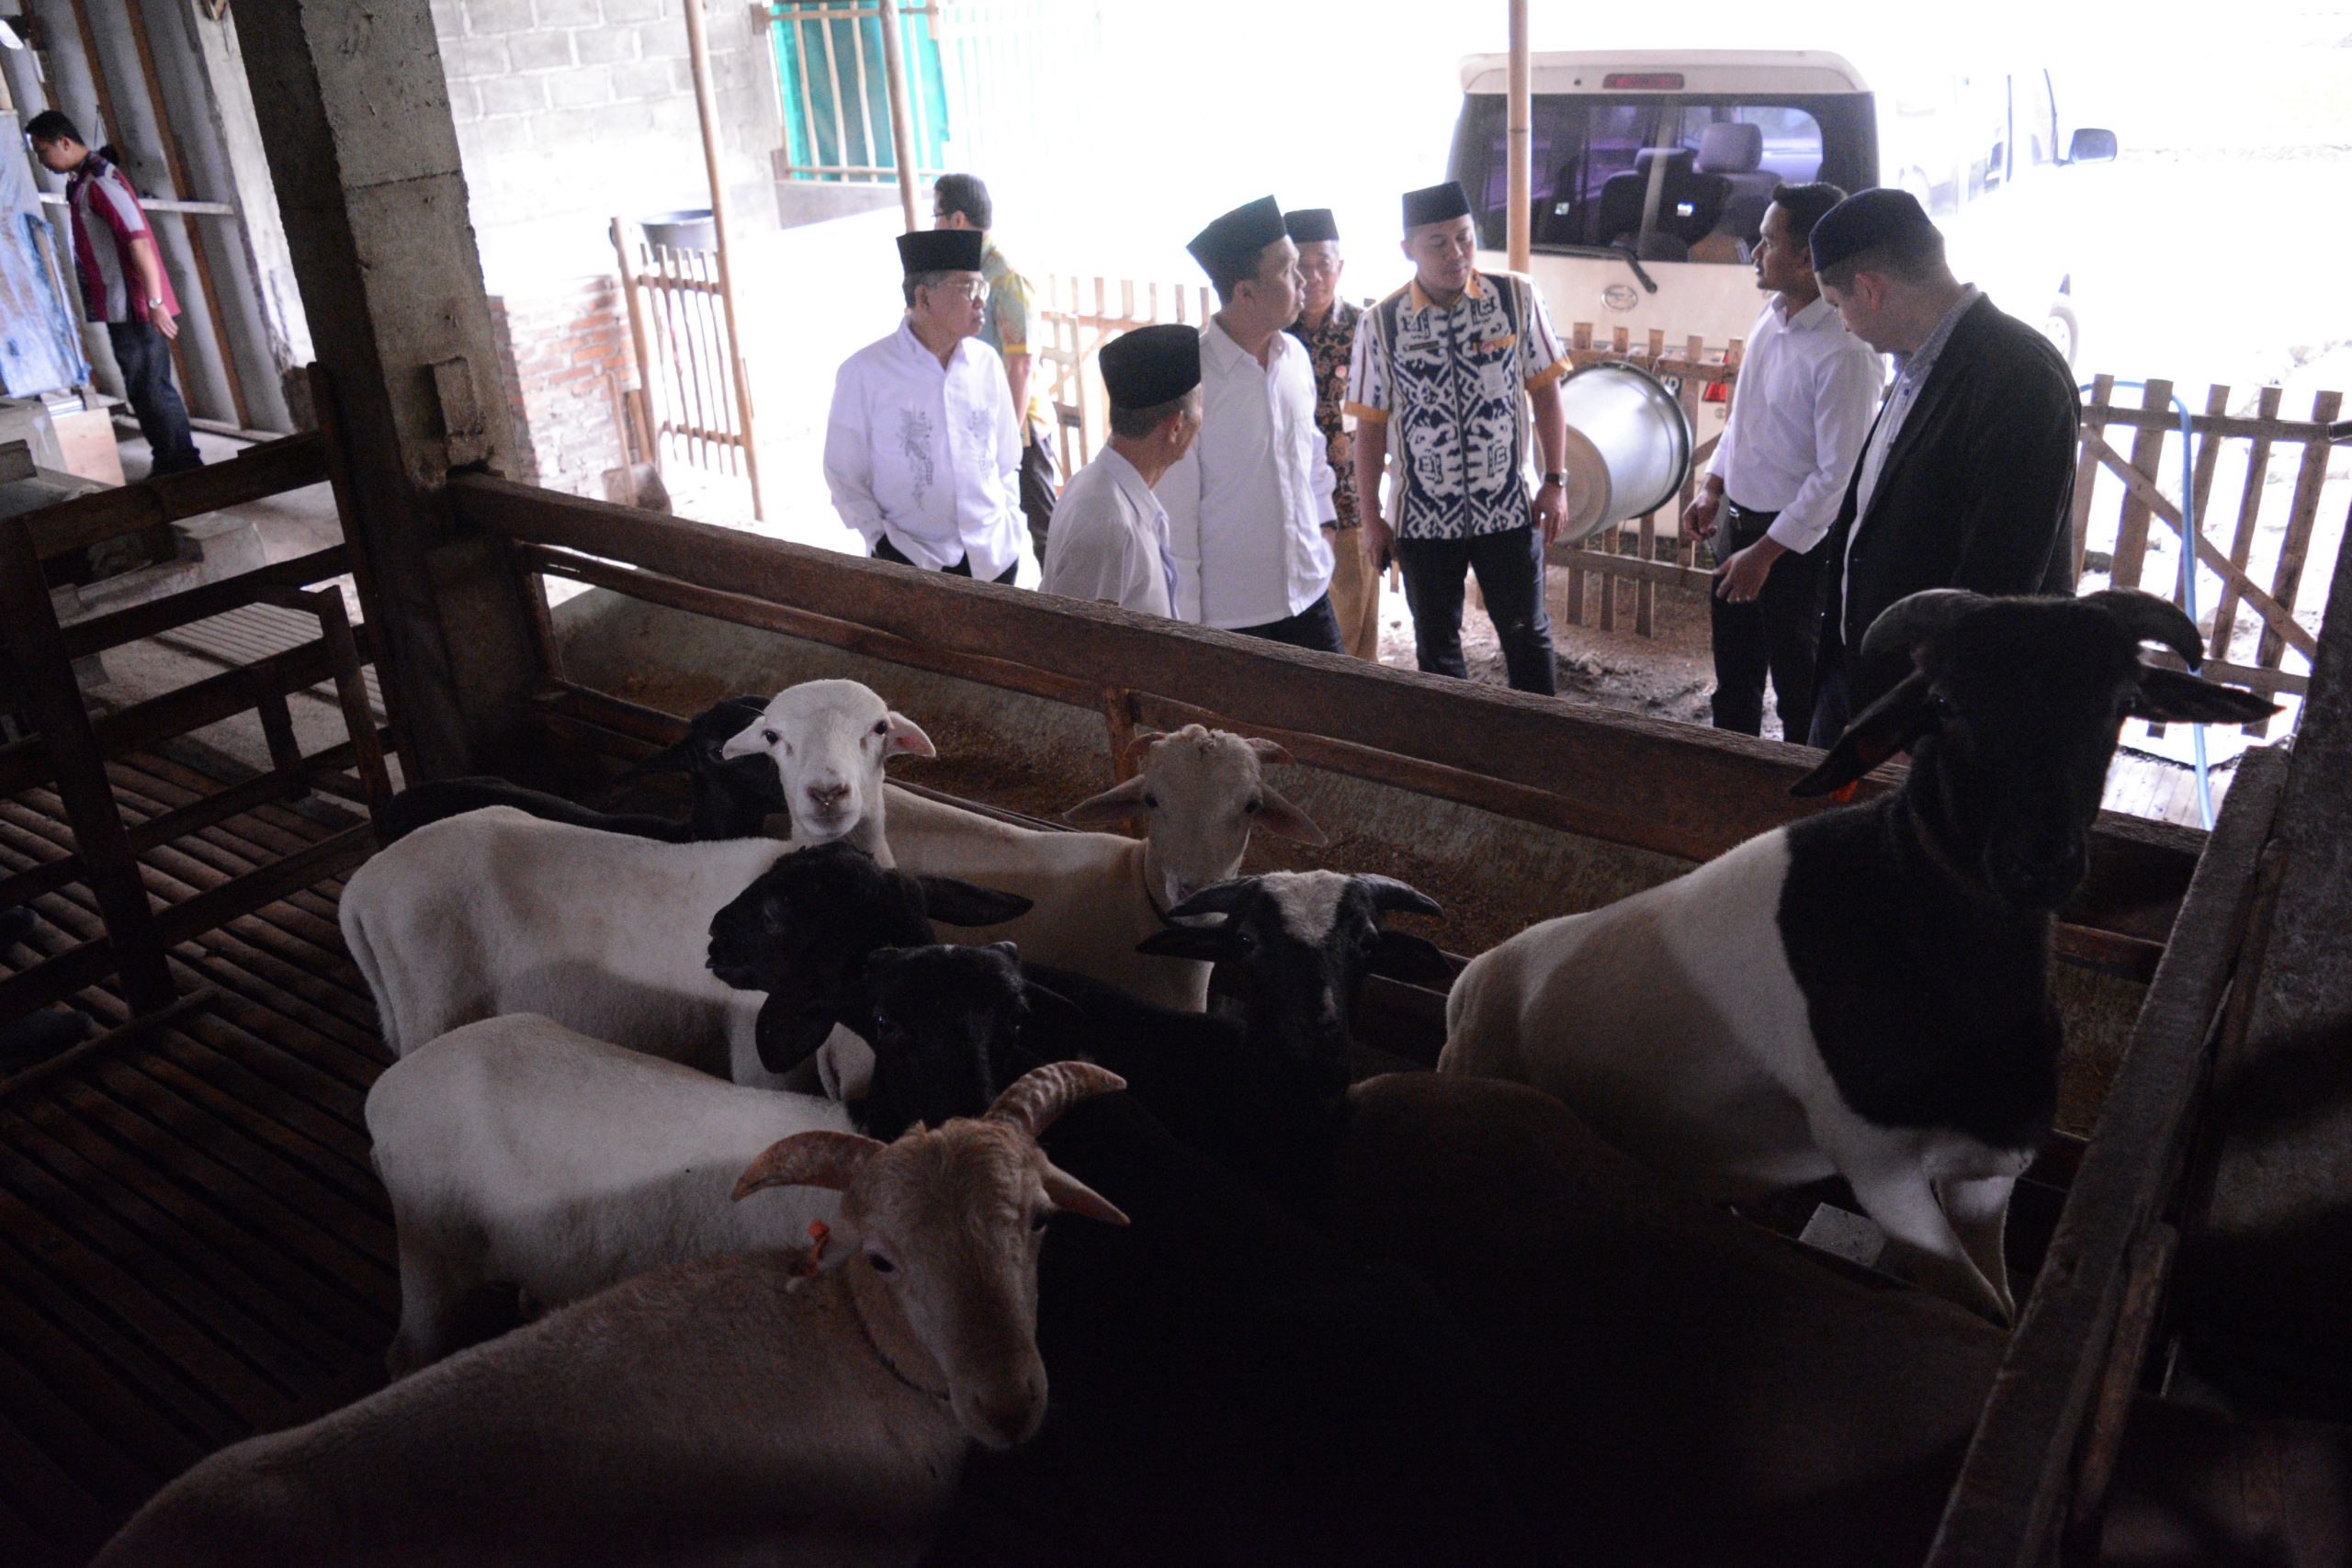 BAZNAS Provinsi Jawa Tengah Mengunjungi Rumah Pemotongan Hewan (RPH) Toros Farm Magelang